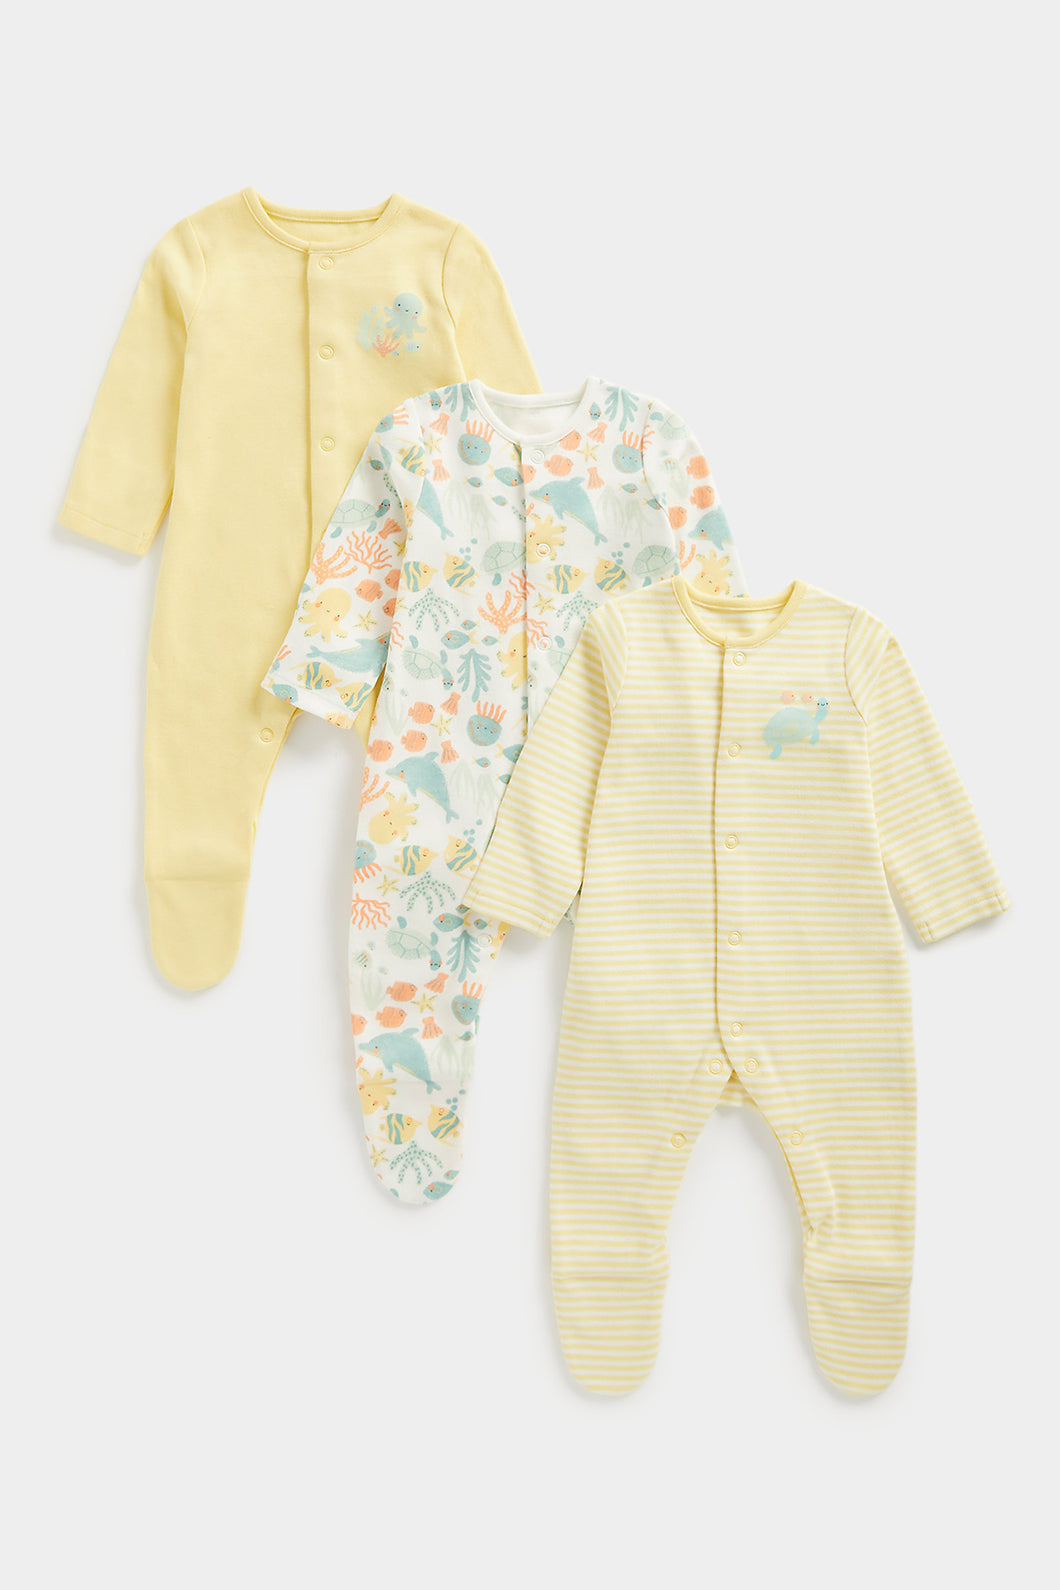 Mothercare Ocean Sleepsuits - 3 Pack